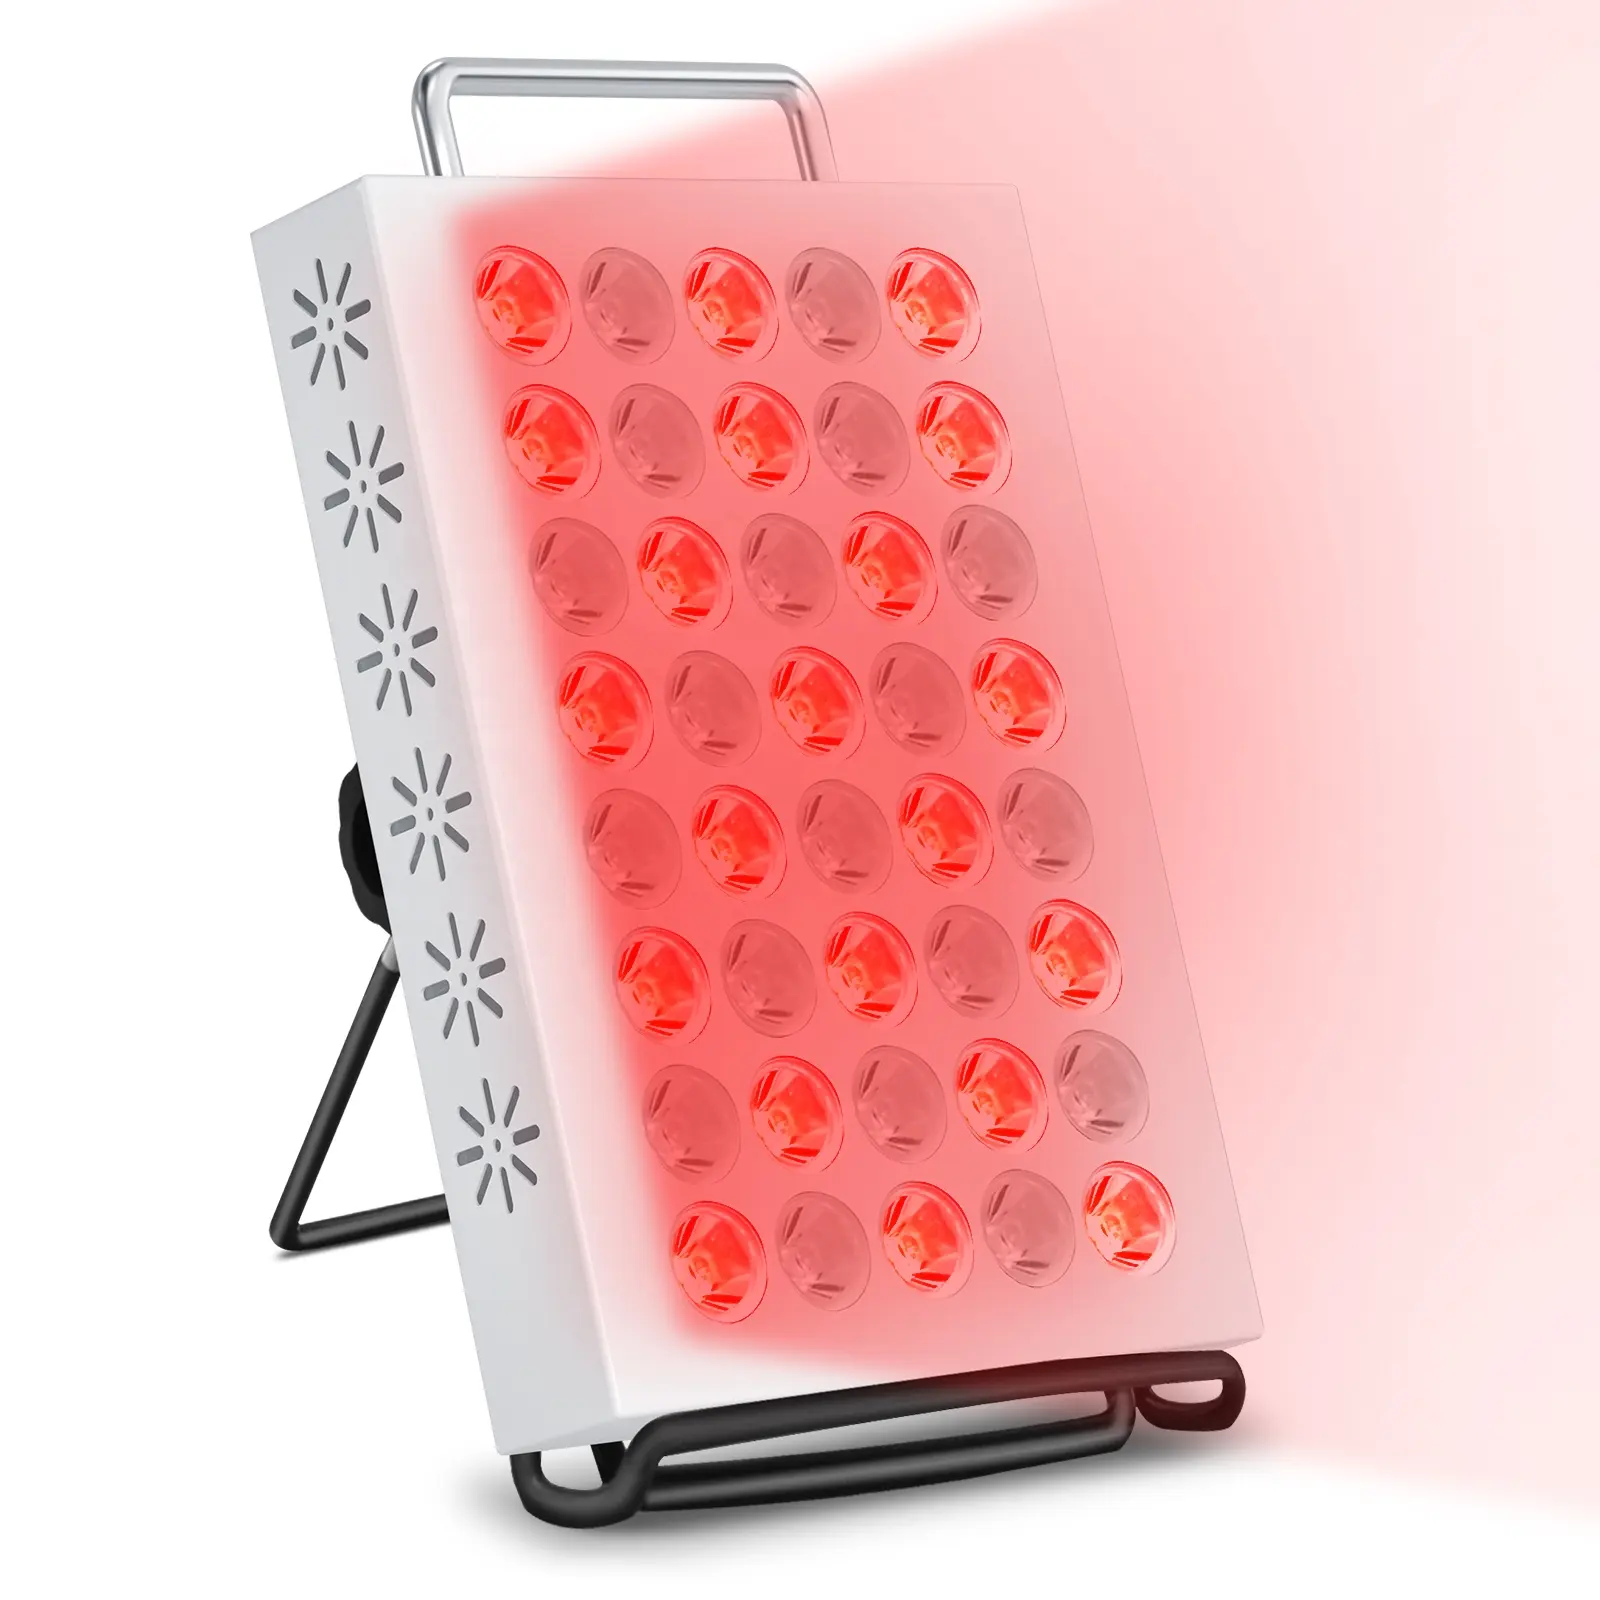 Rotlicht-Therapie-Paneel 40LED 660nm und 850nm Lichtkombi Infrarotlicht-Therapie-Gerät für Körper-Gesichts-Schönheitspflege Schmerzlinderung